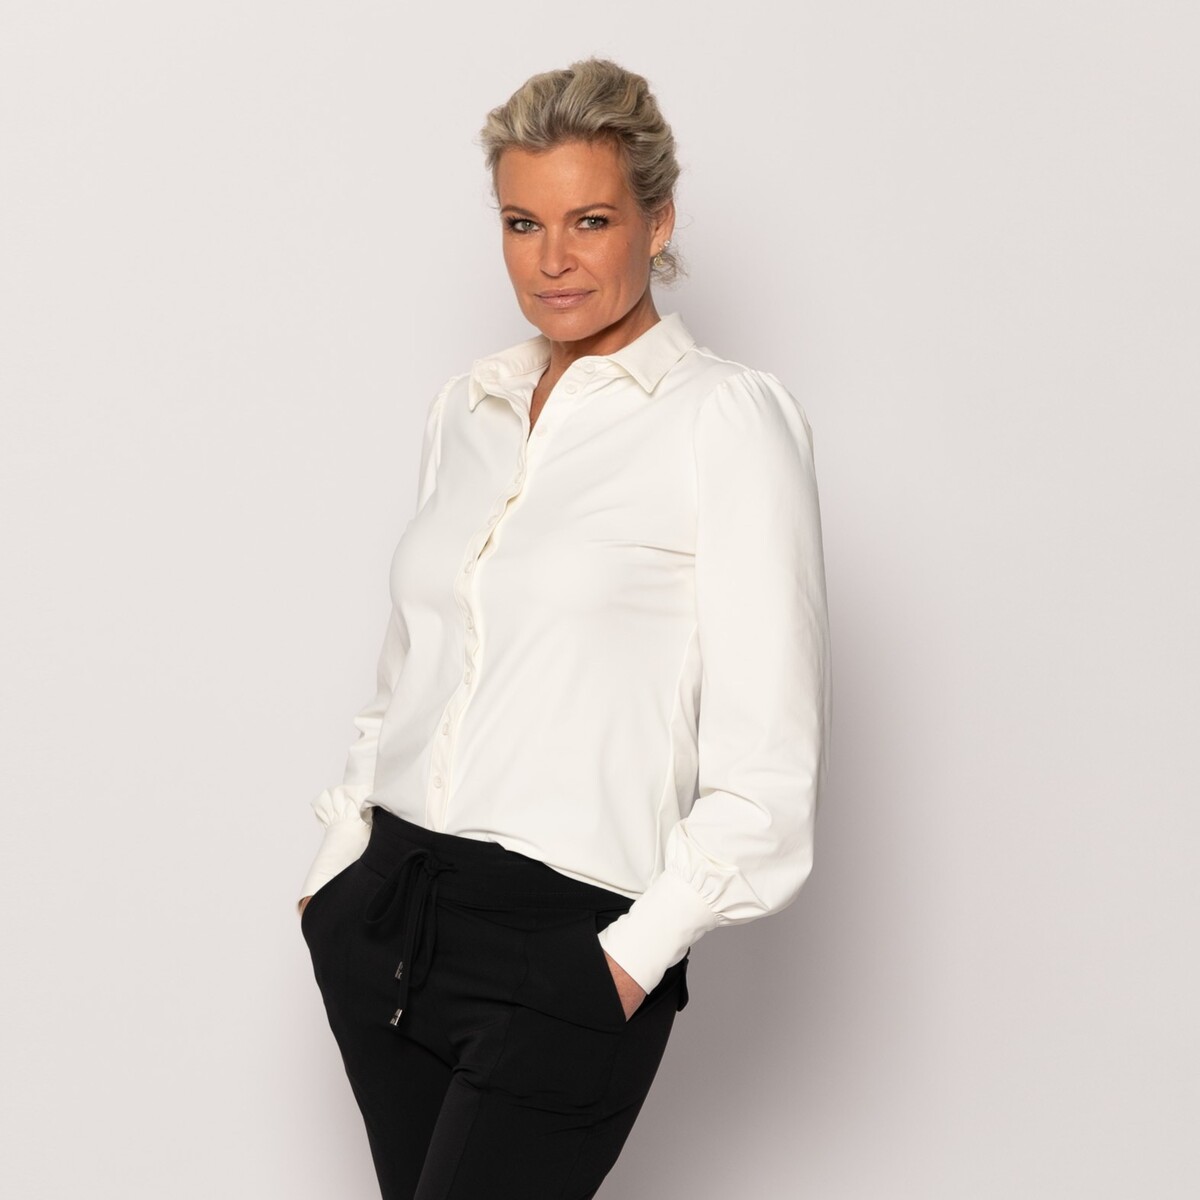 Sportschool Portaal Grap Travel blouse off-white pofmouw | Amy 037 | Studio Lienne